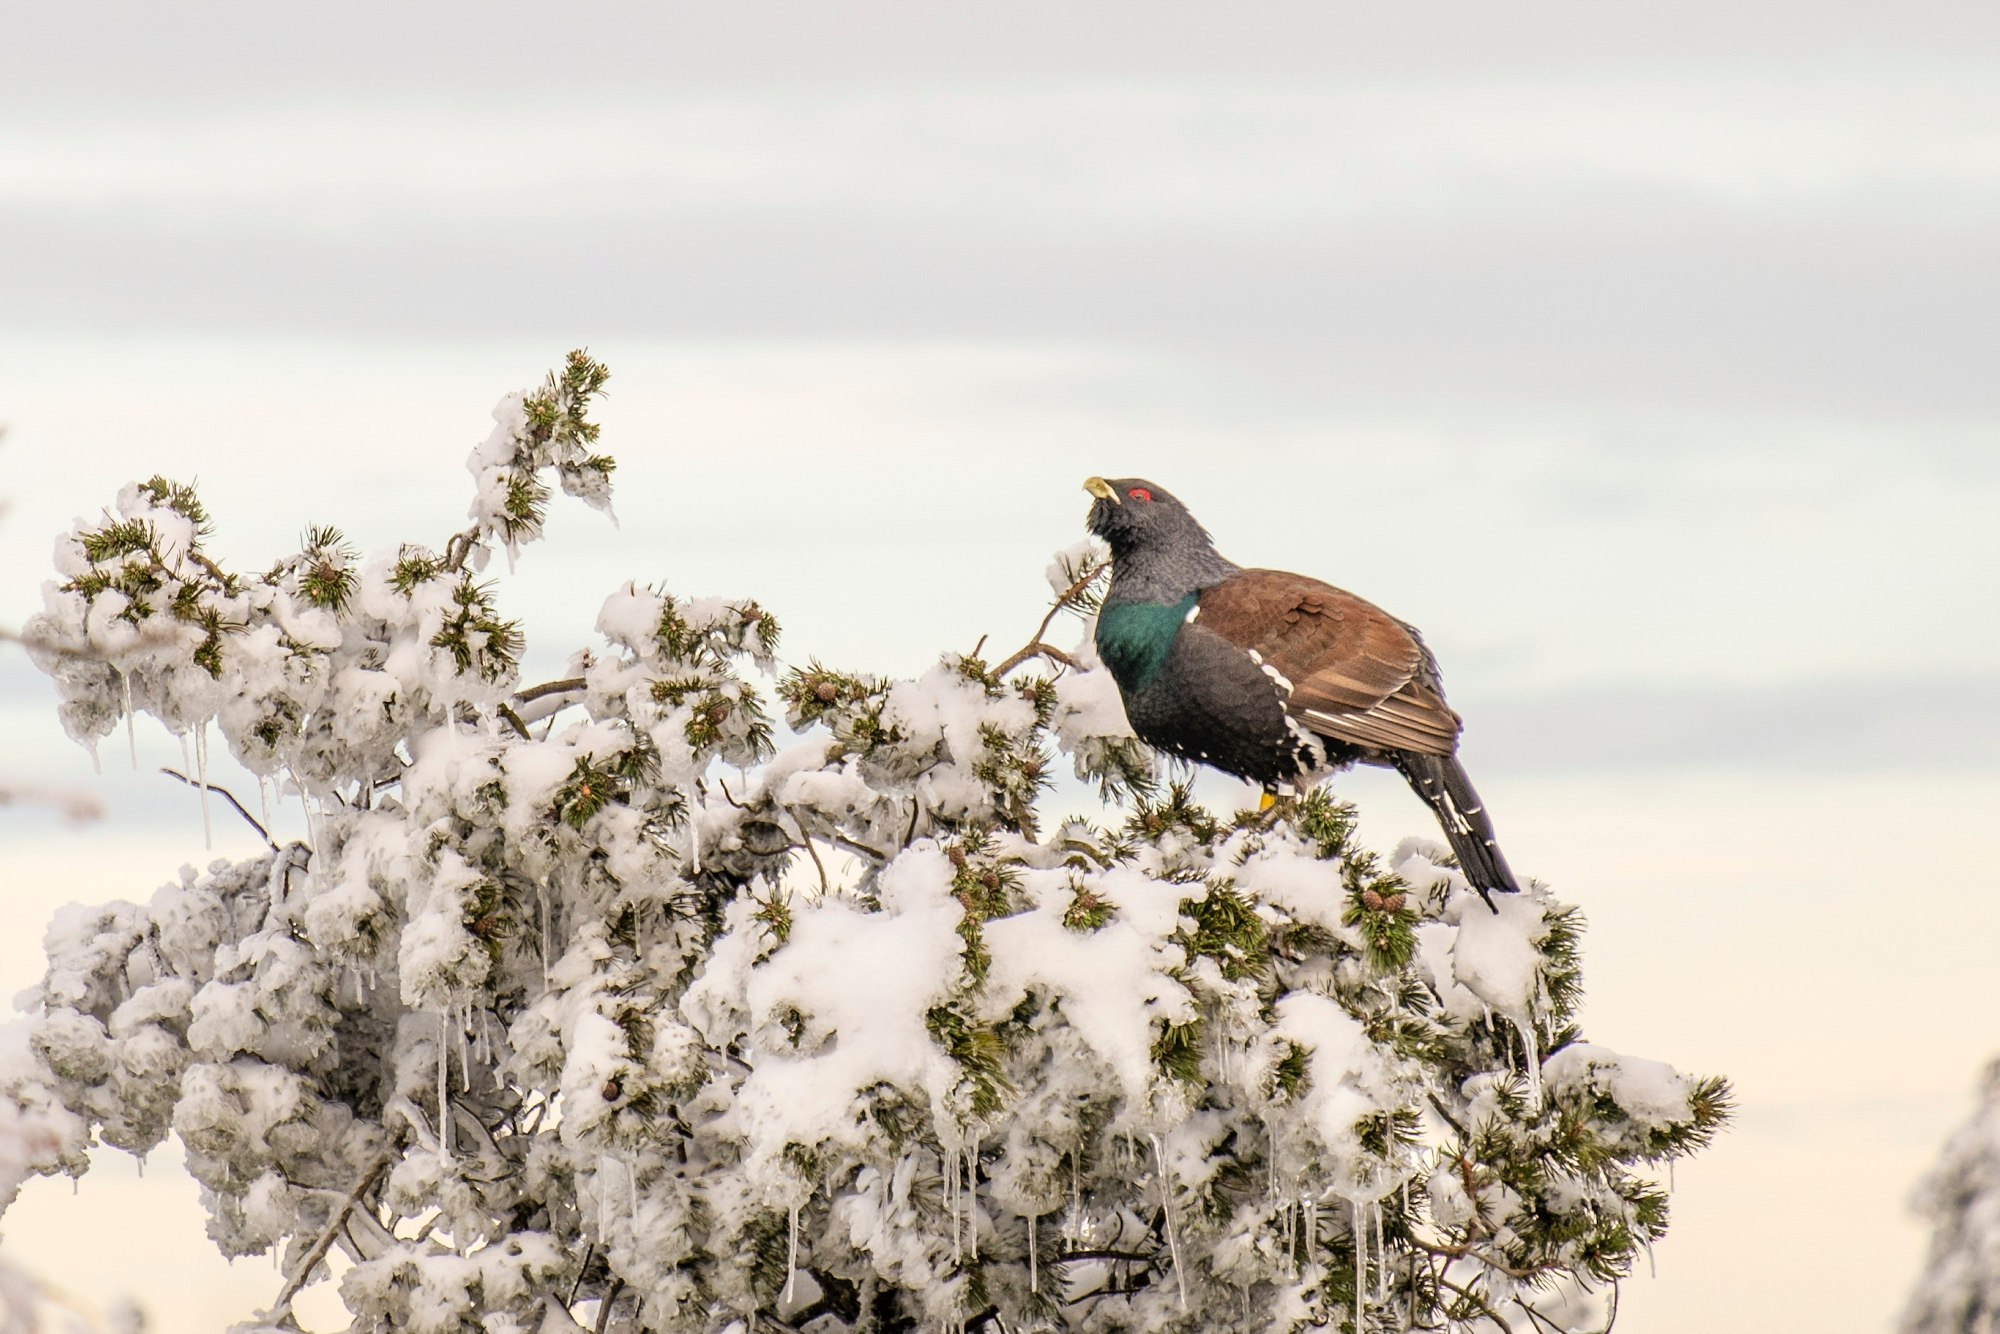 Auerhahn auf einem verschneiten Nadelbaum sitzend. Der große Vogel hat ein blauschwarzes Gefieder, braune Flügel und einen charakteristischen roten Fleck über den Augen.